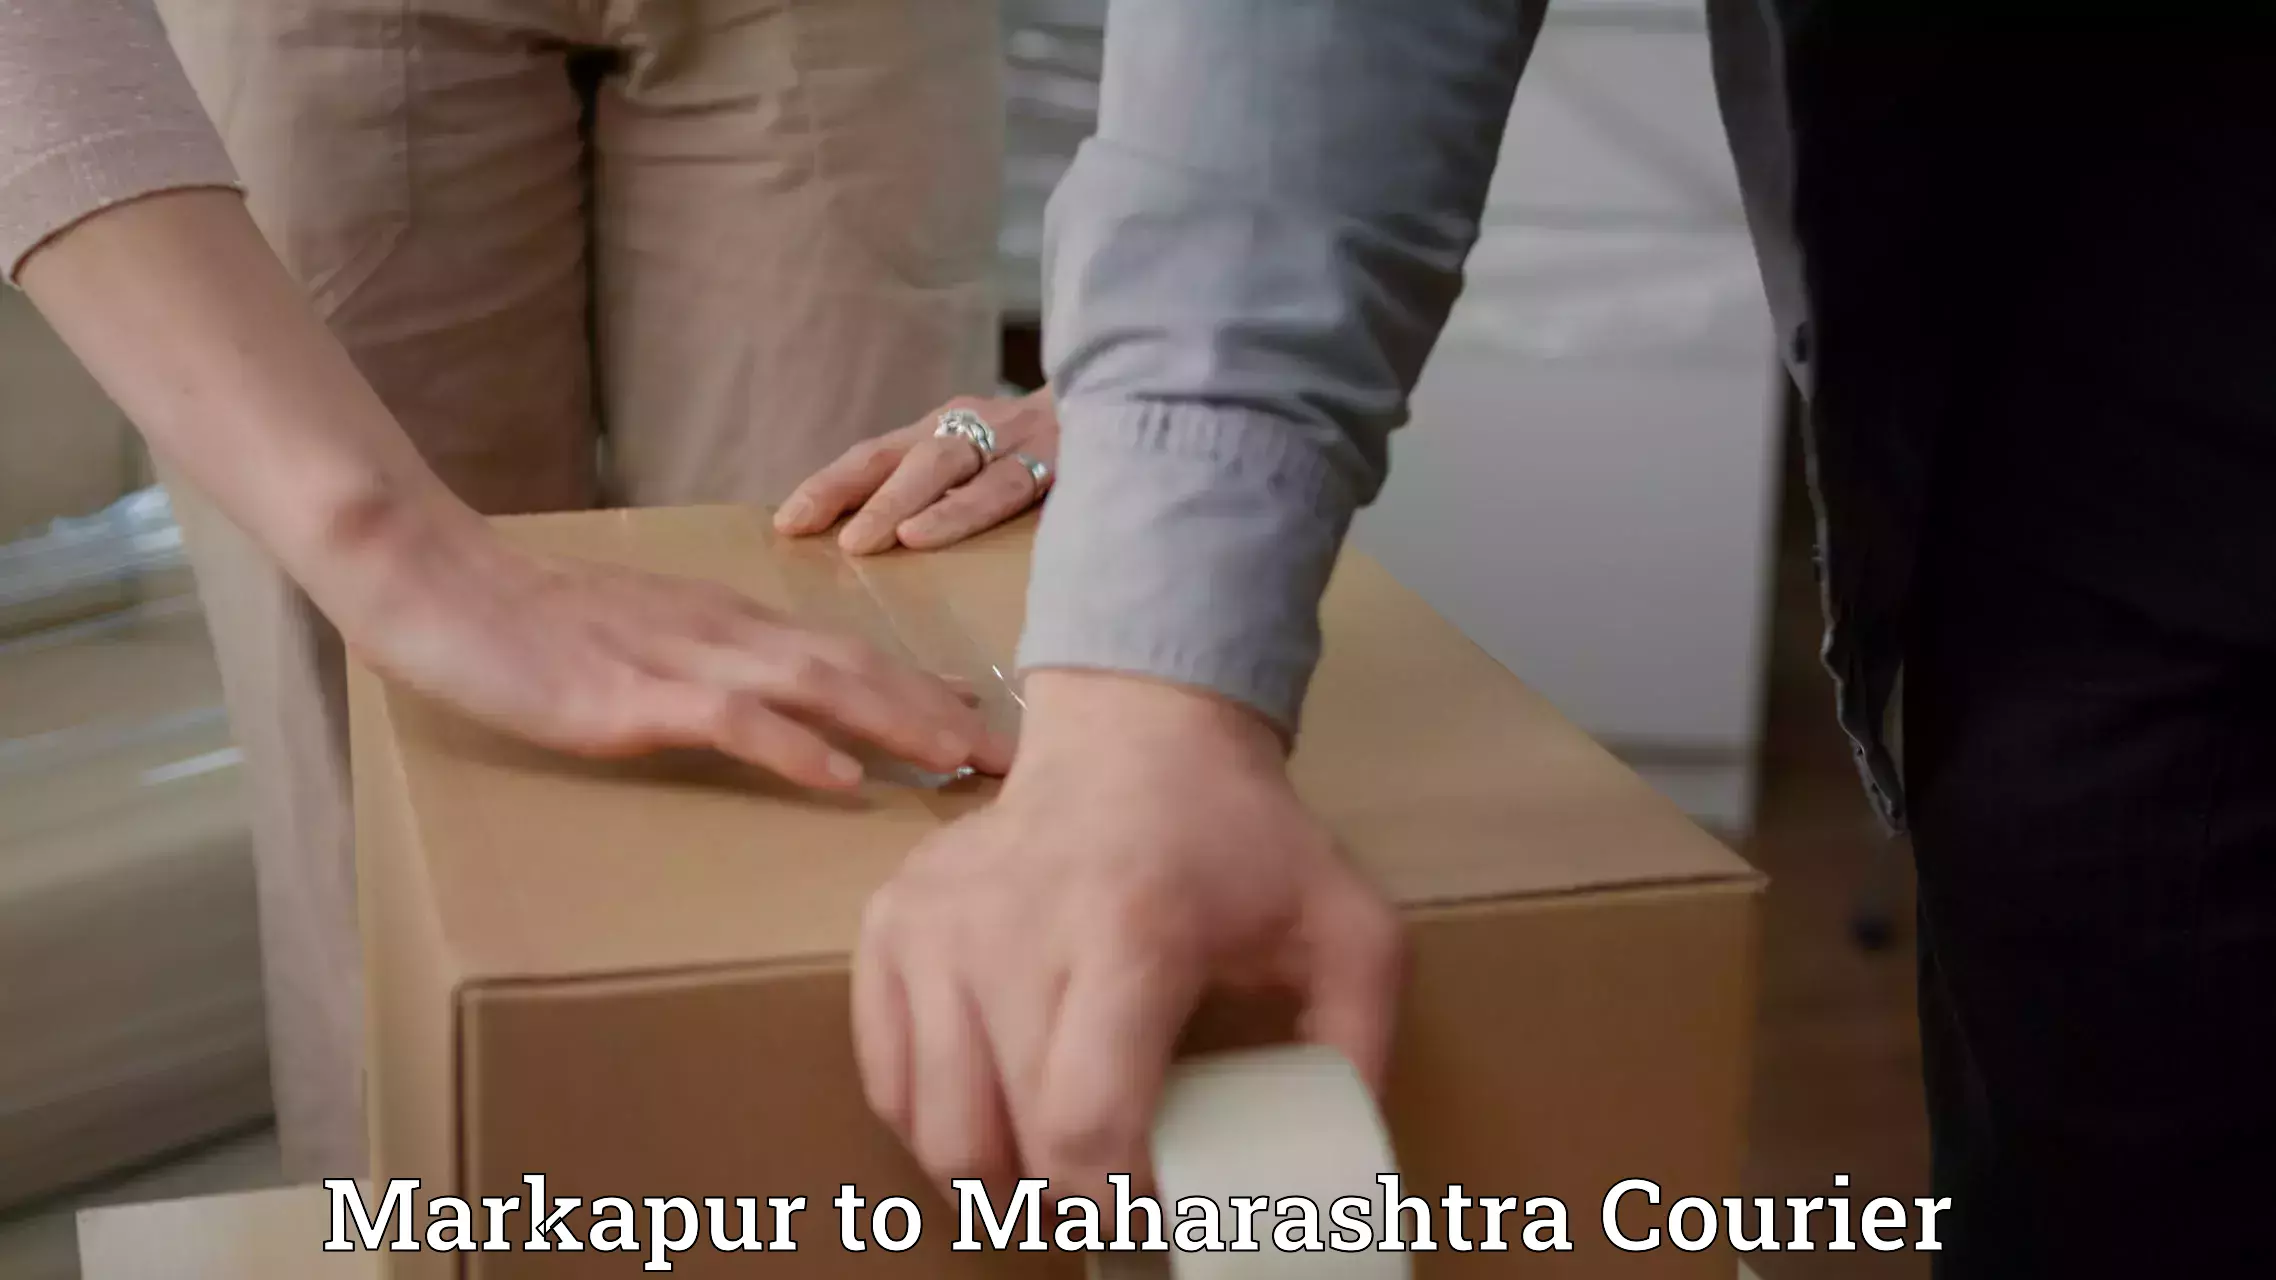 Quick booking process Markapur to Mahabaleshwar